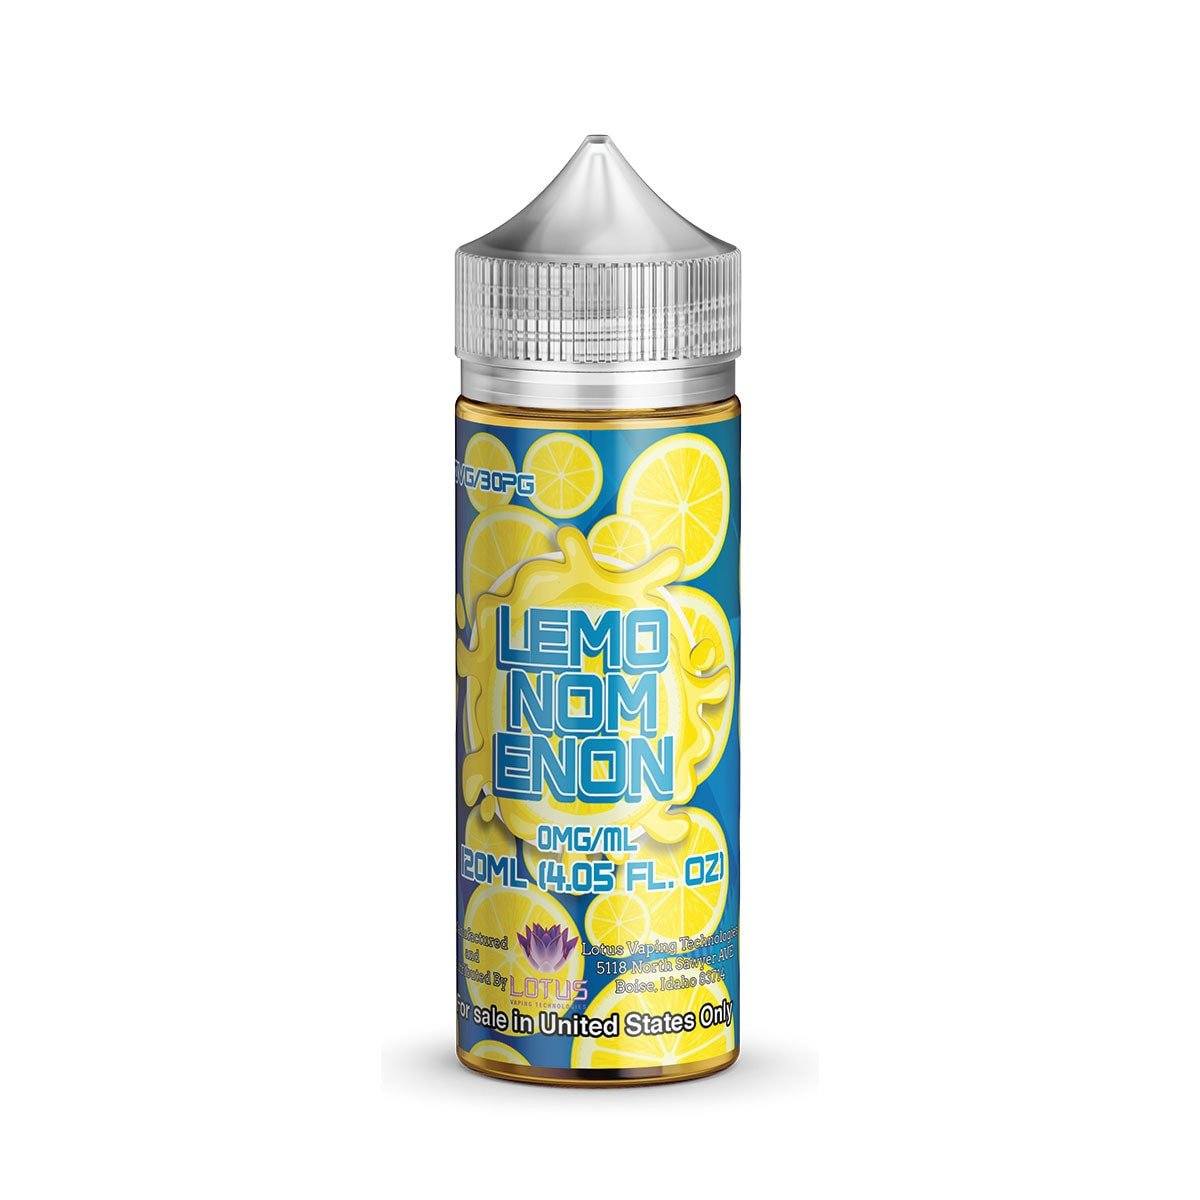 Lemonomenon by Nomenon 120ML Bottle